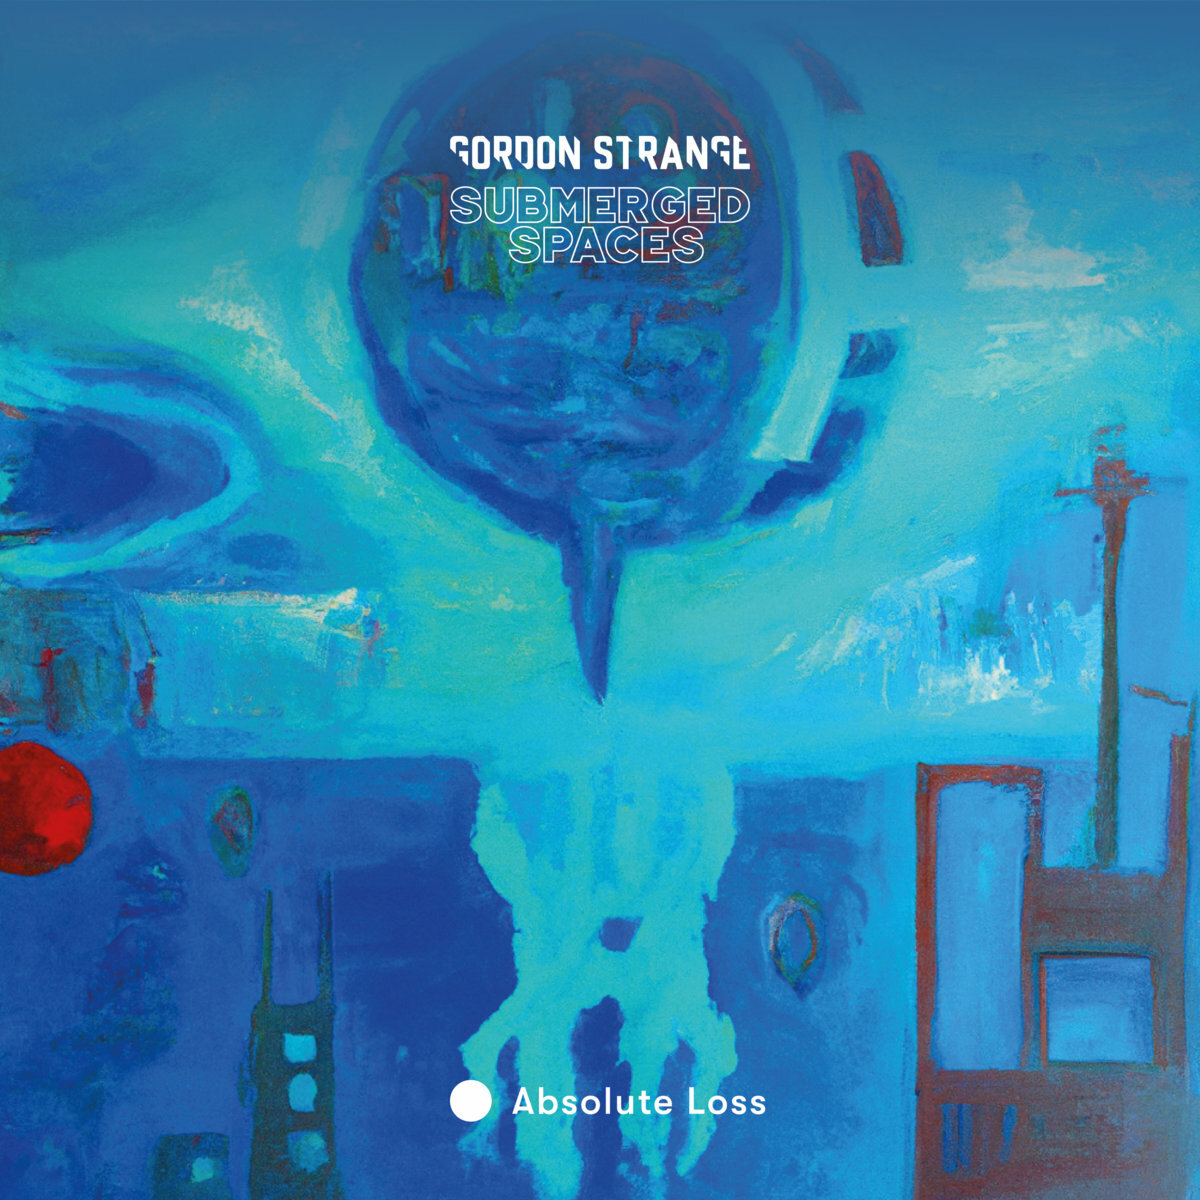 Gordon Strange - Submerged Spaces